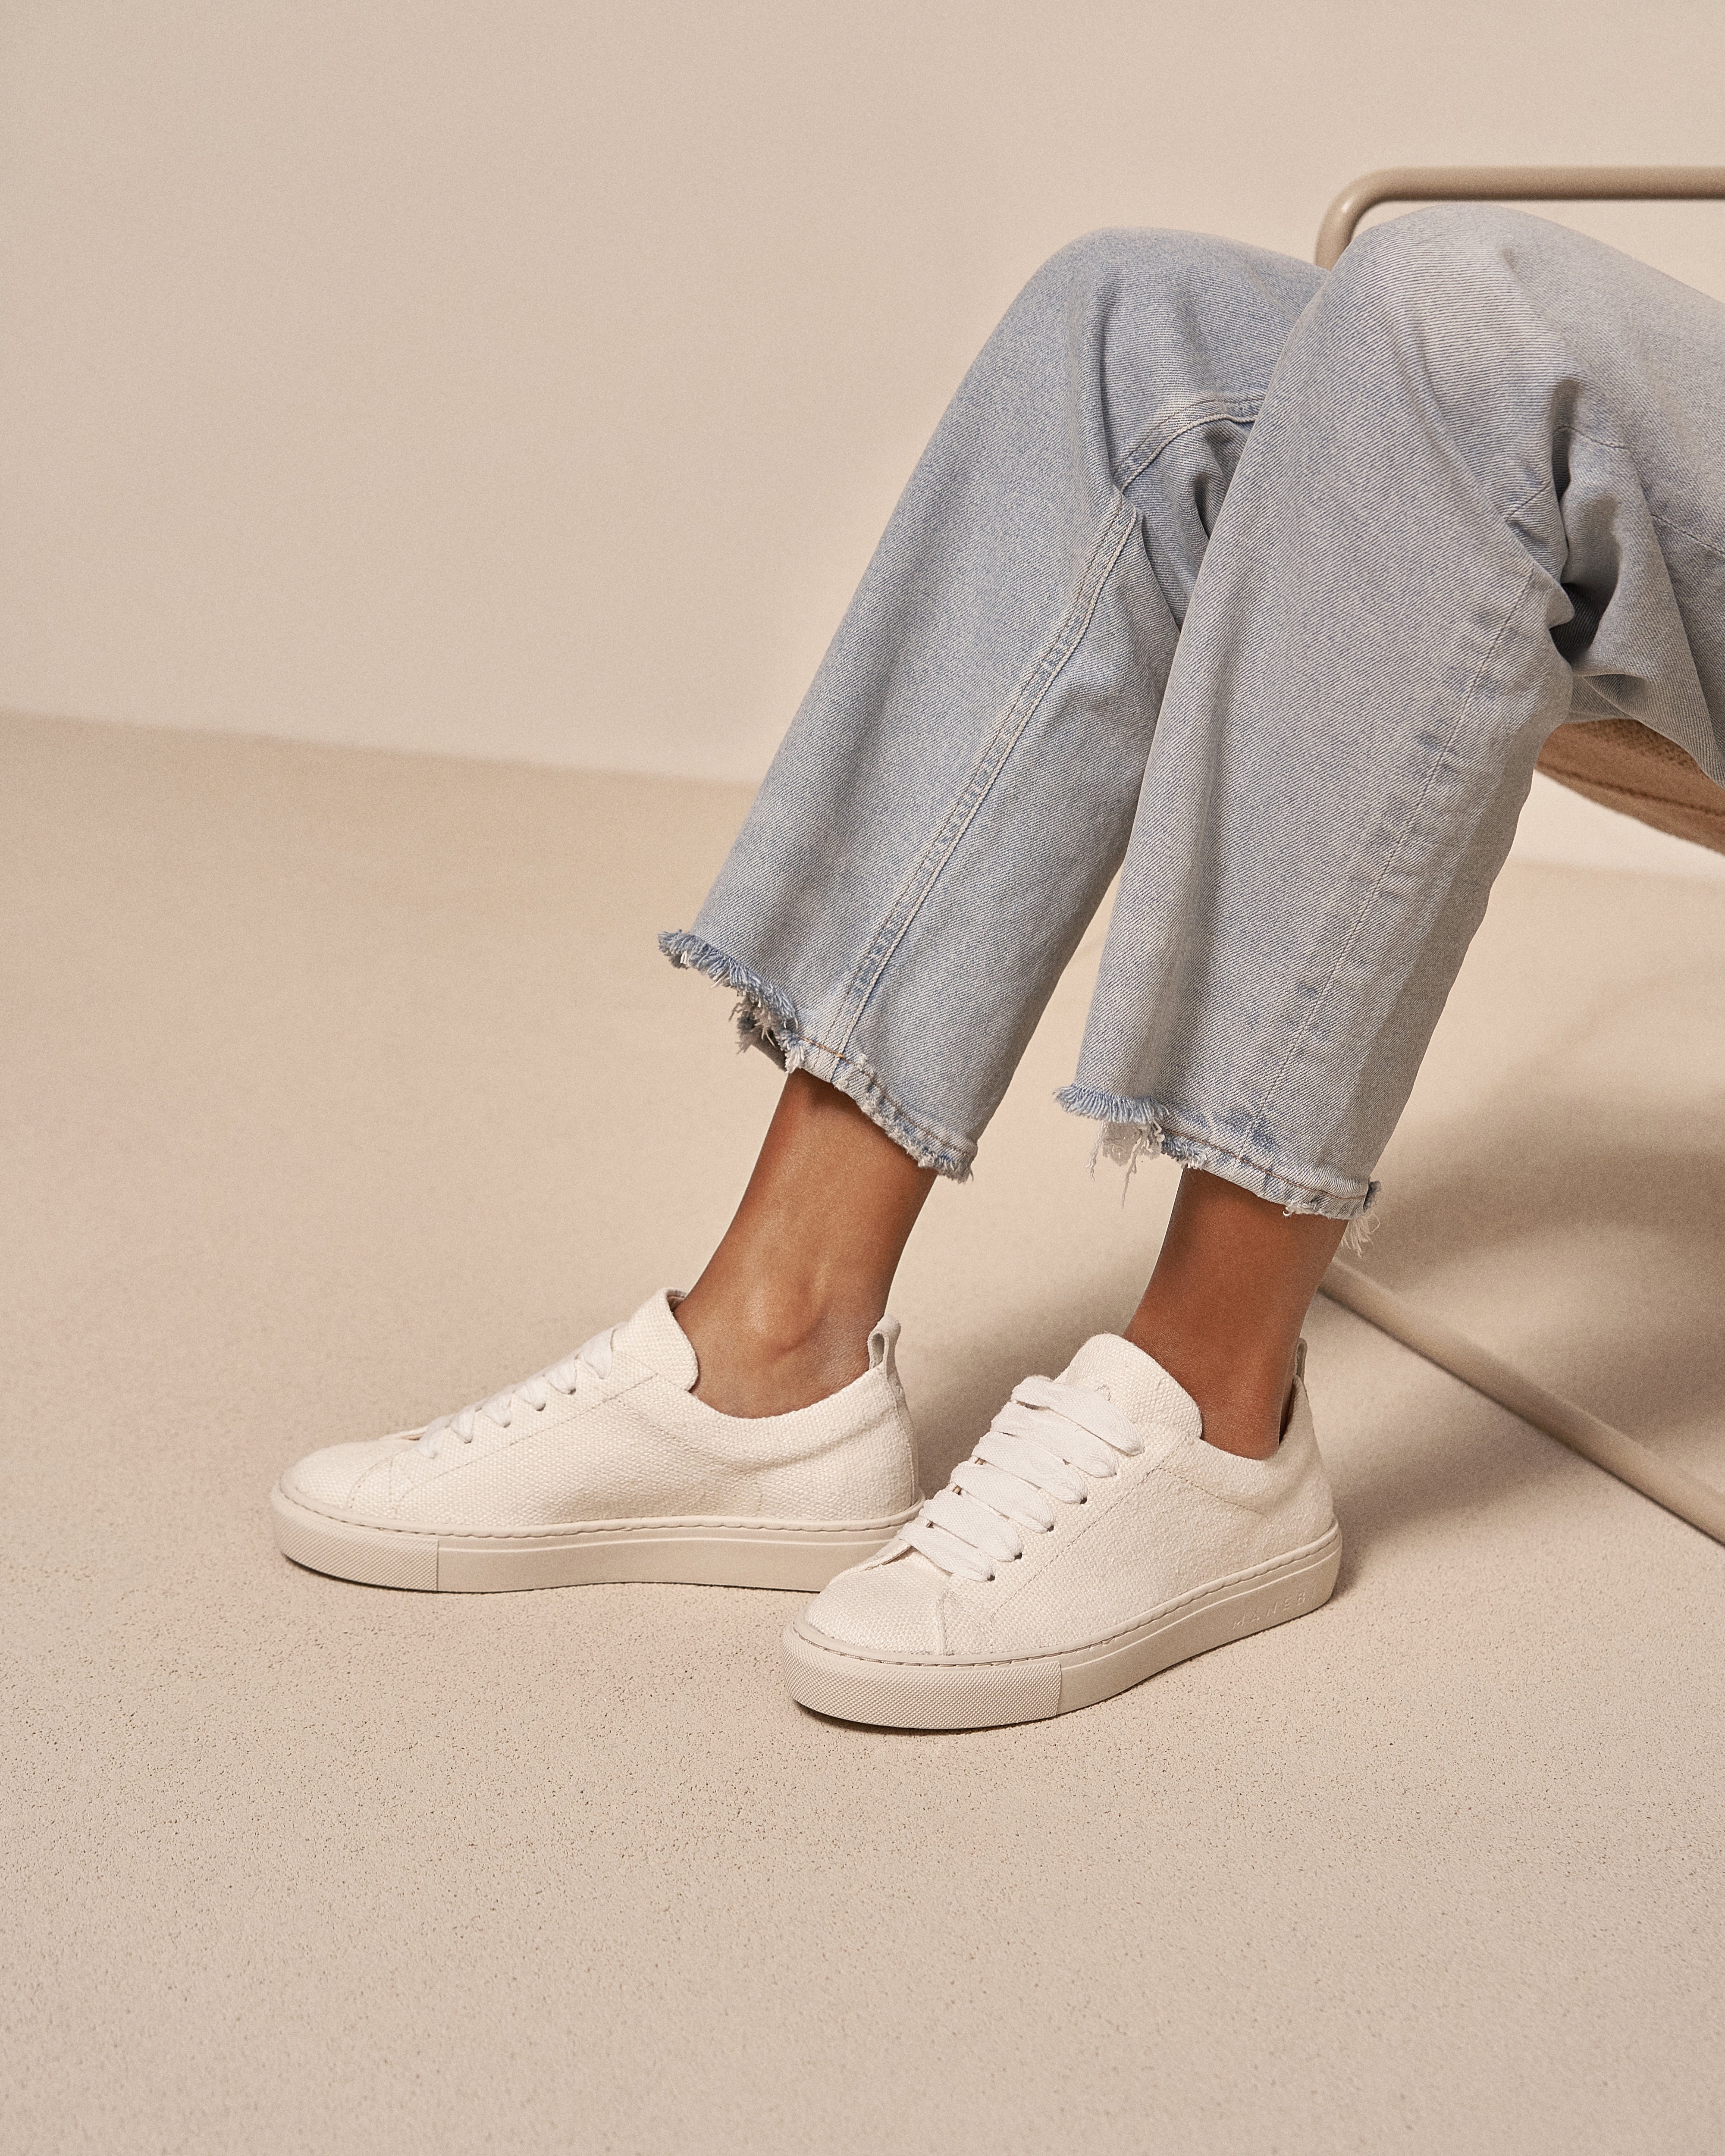 Organic Hemp Sneakers - White